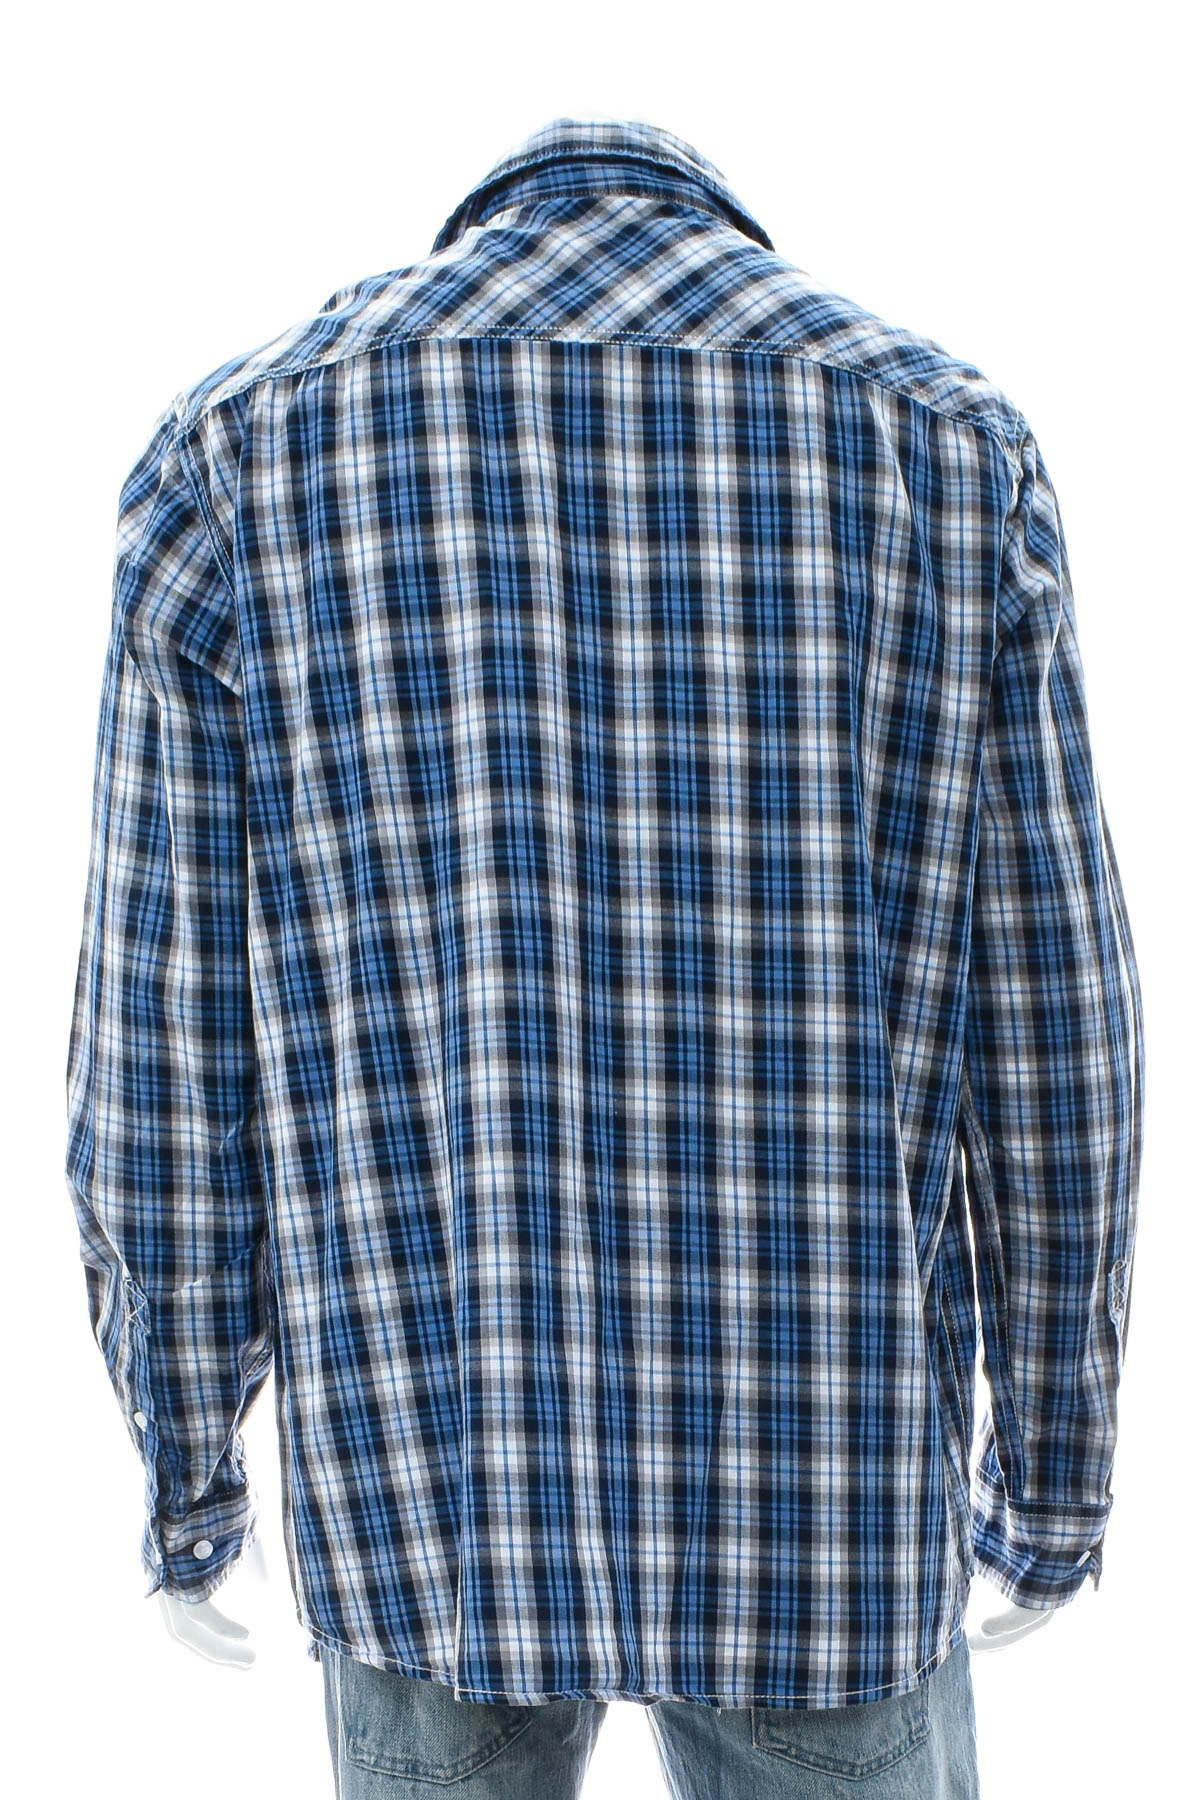 Men's shirt - Identic - 1